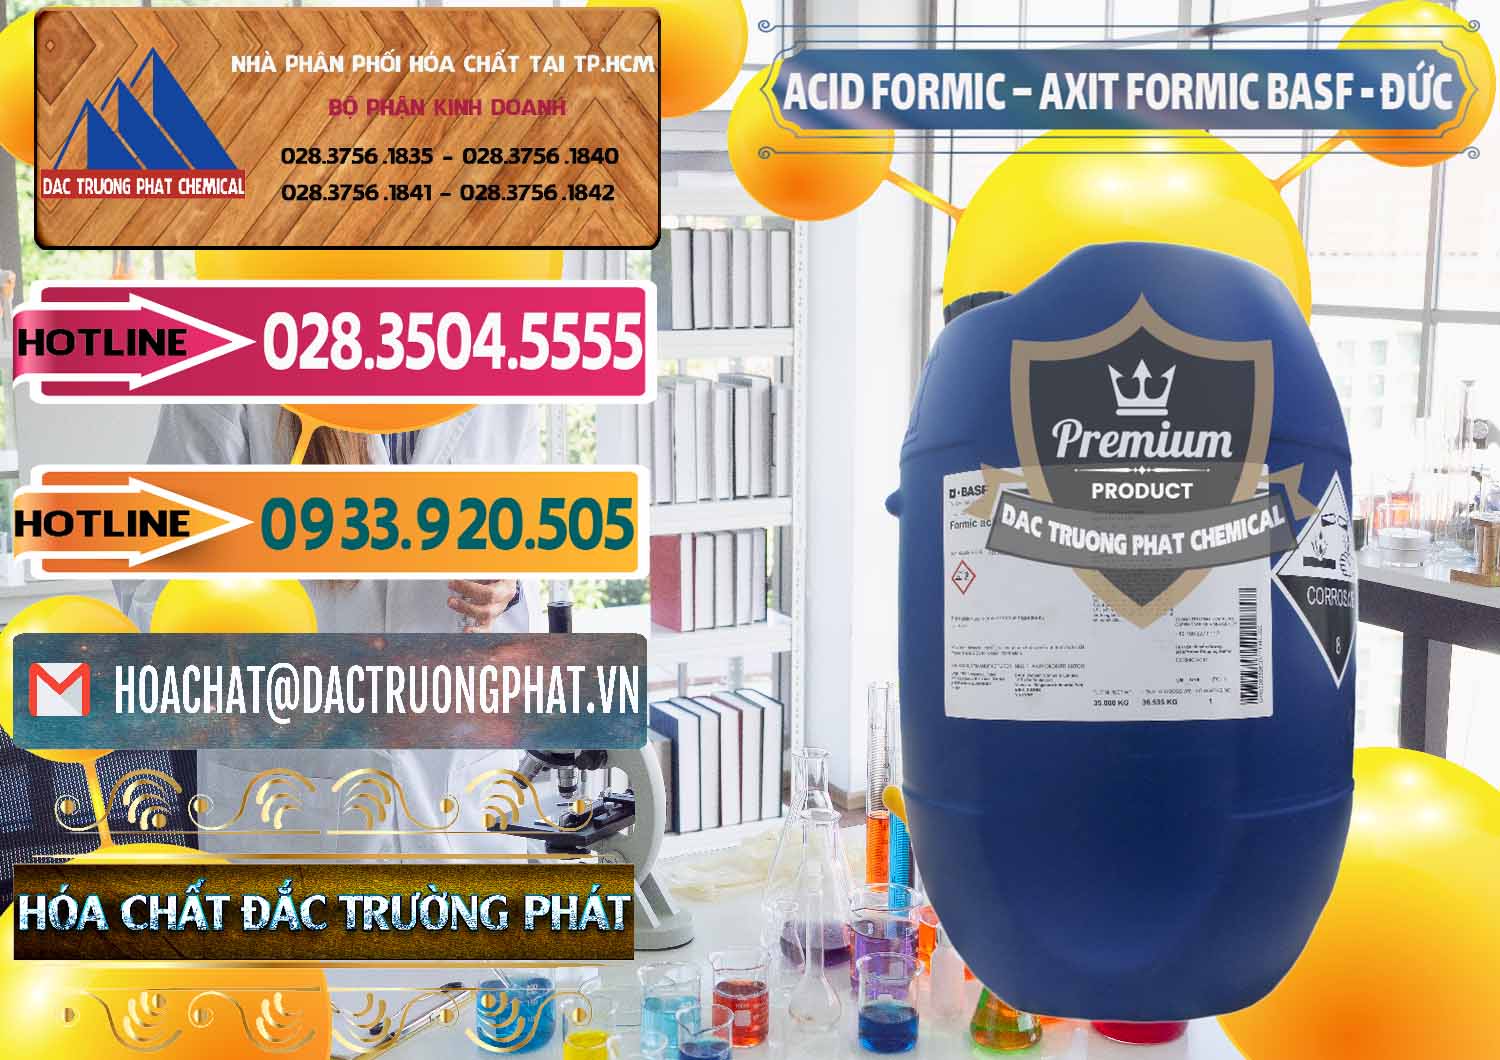 Công ty bán ( cung ứng ) Acid Formic - Axit Formic BASF Đức Germany - 0028 - Cty cung cấp & phân phối hóa chất tại TP.HCM - dactruongphat.vn